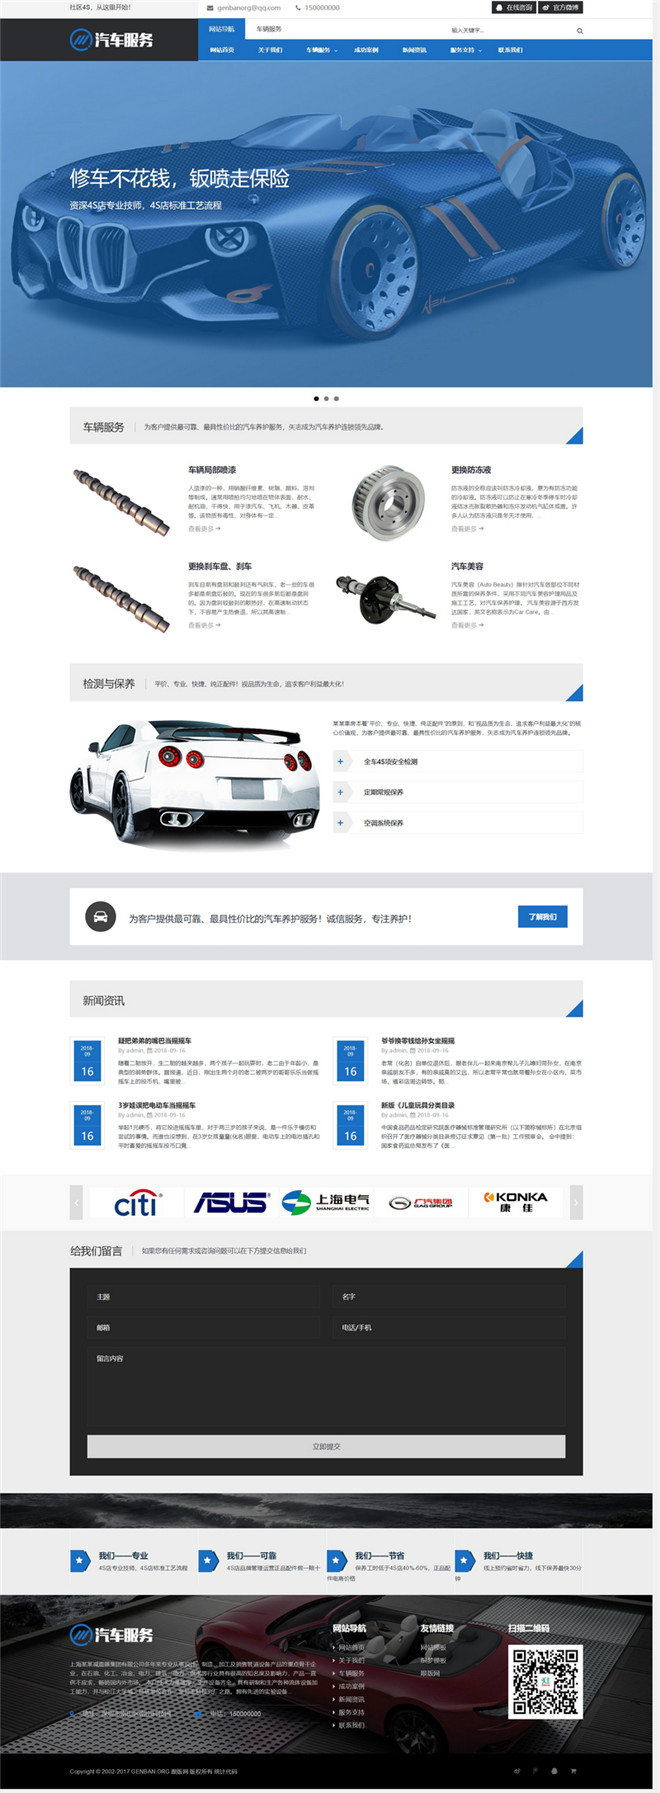 html5汽车保养汽车服务汽车销售资讯展示网站模板源码下载演示图